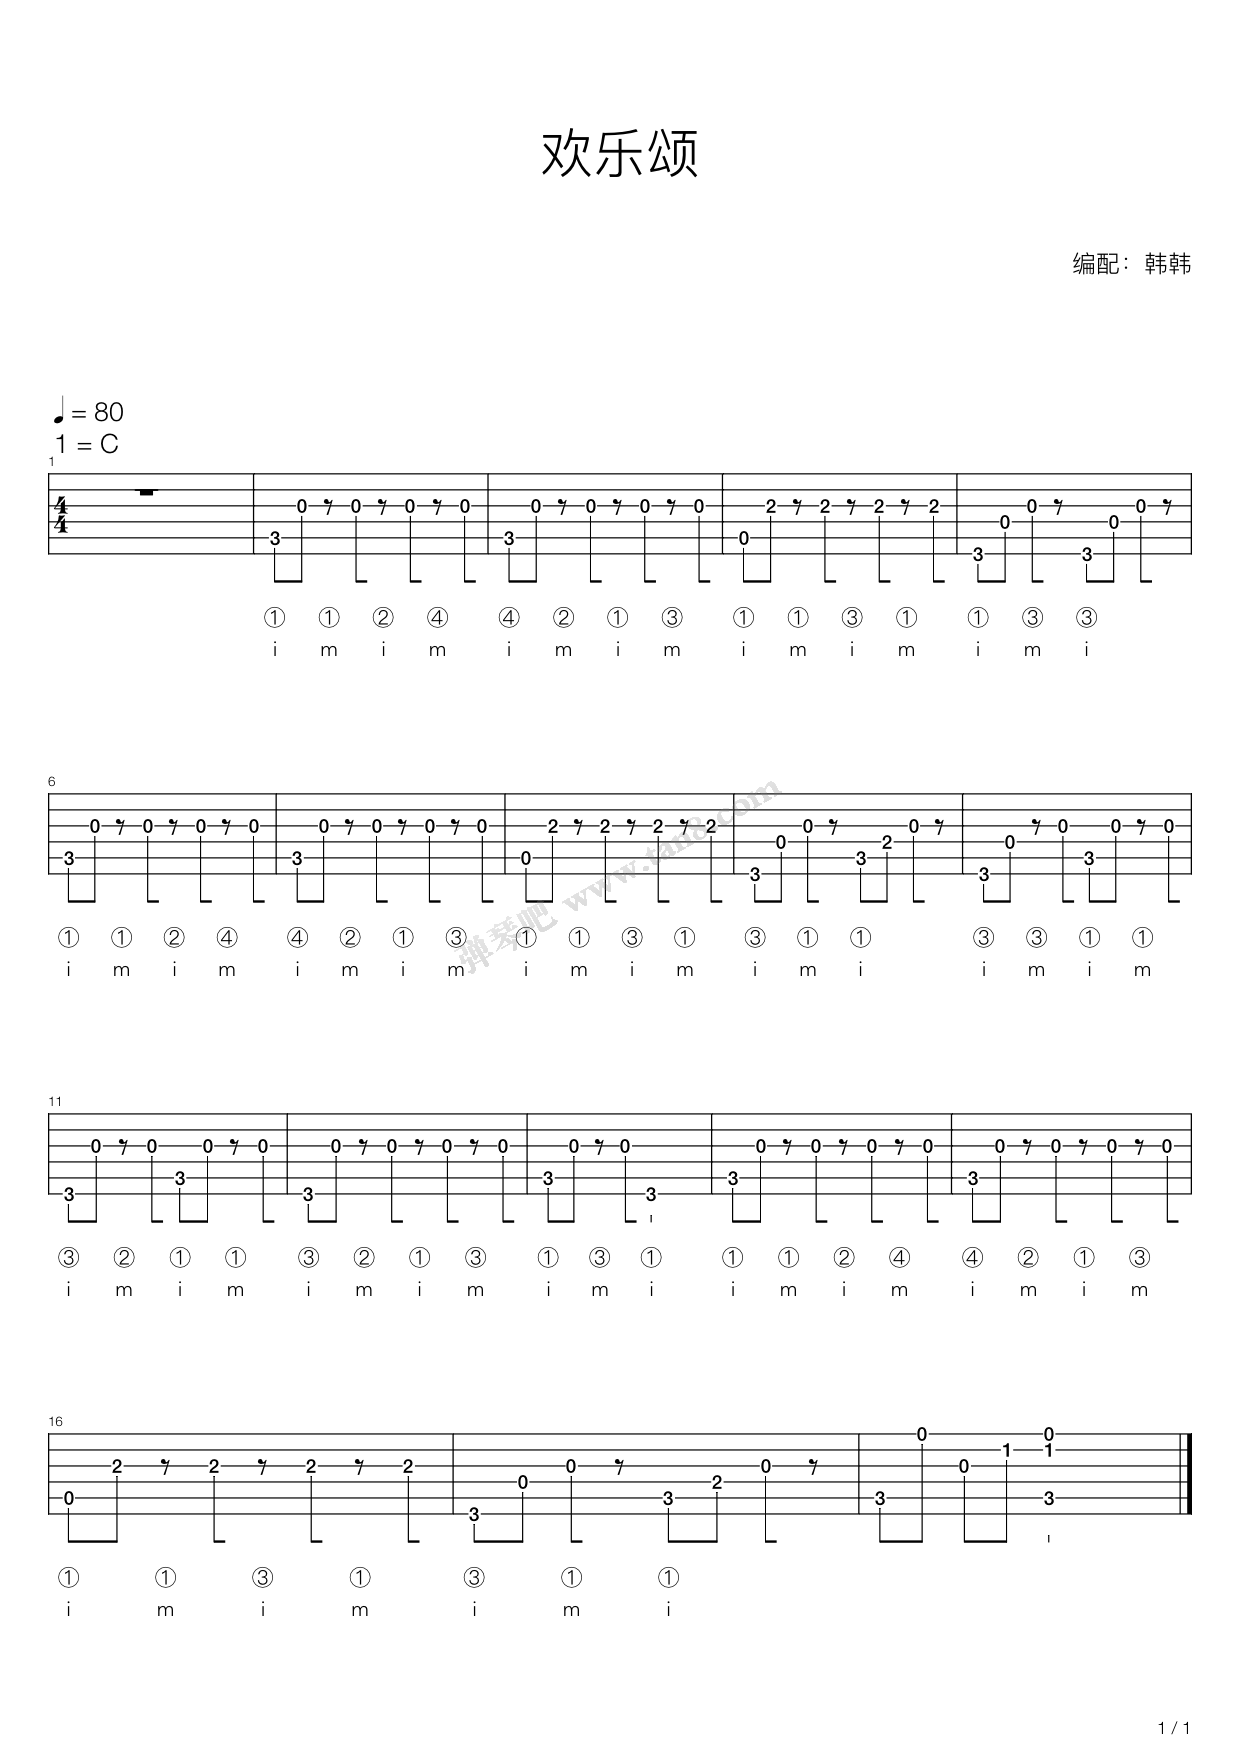 欢乐颂-完整版双手简谱预览1-钢琴谱文件（五线谱、双手简谱、数字谱、Midi、PDF）免费下载